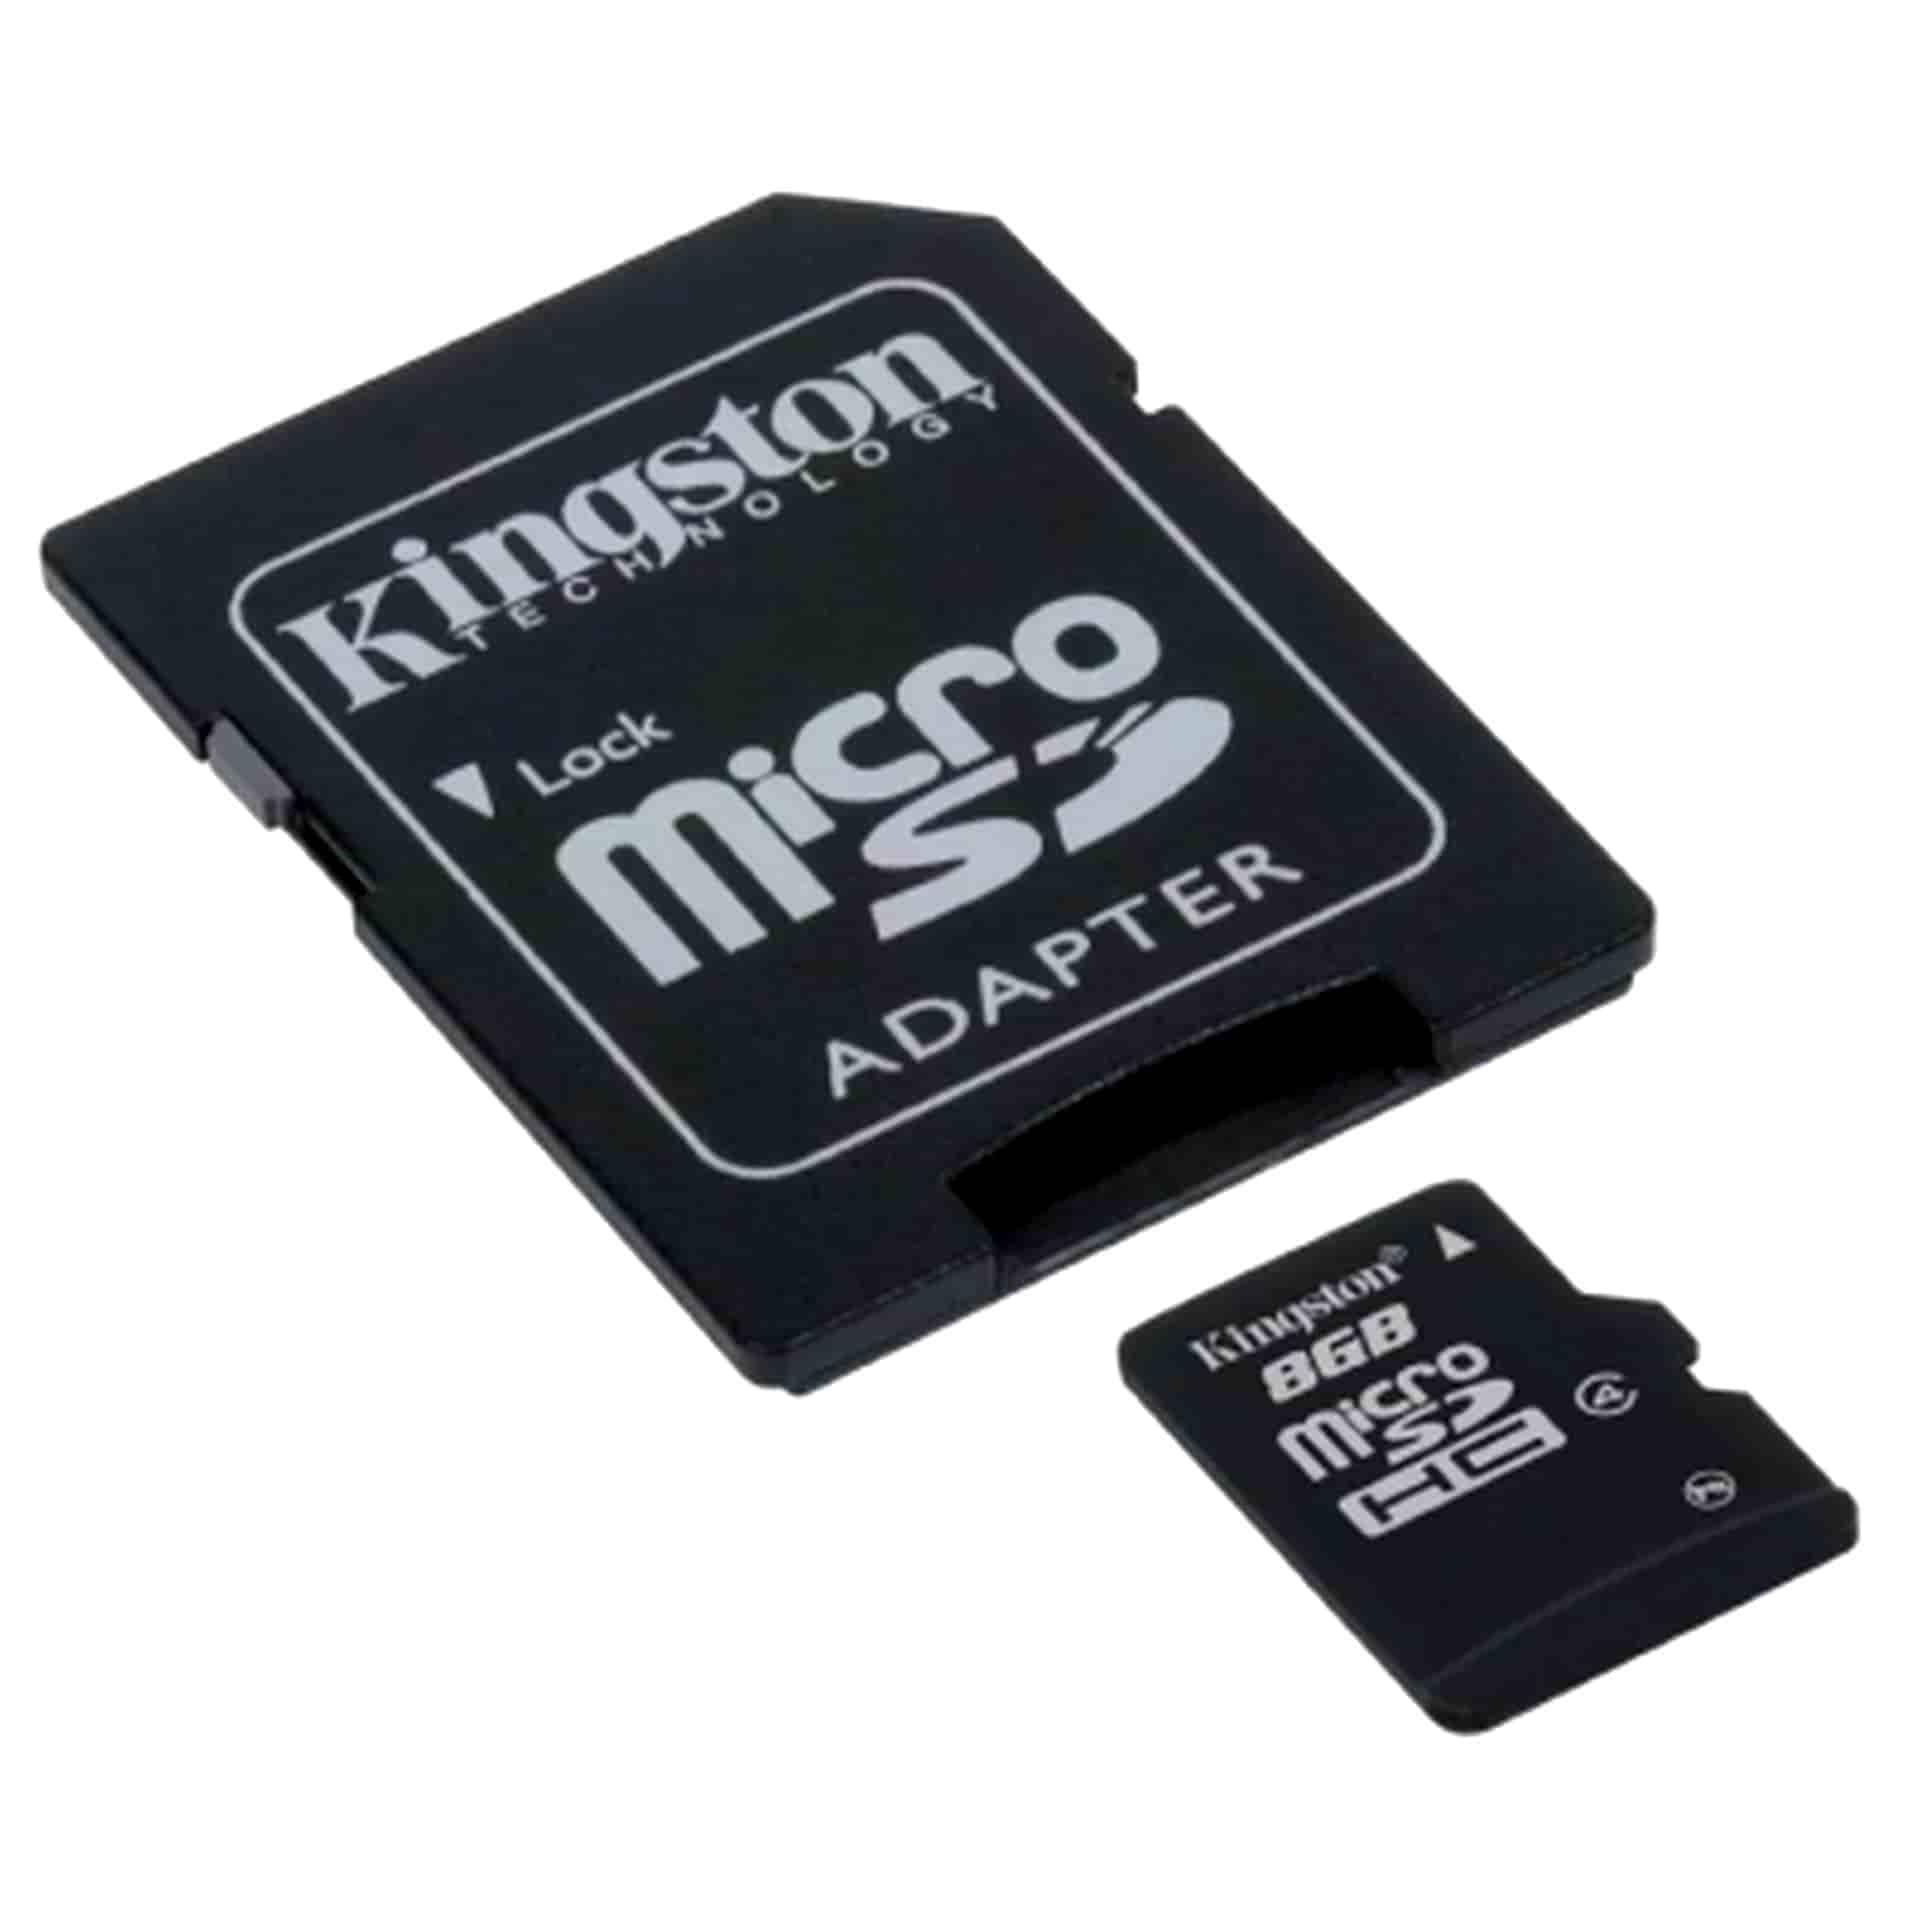 Карта памяти просмотр. 32 GB Kingston SDHC MICROSD. Kingston карта памяти +Adapter 32gb. Kingston MICROSD 16gb (адаптер) карта памяти. Kingston MICROSDHC 32gb cl10.